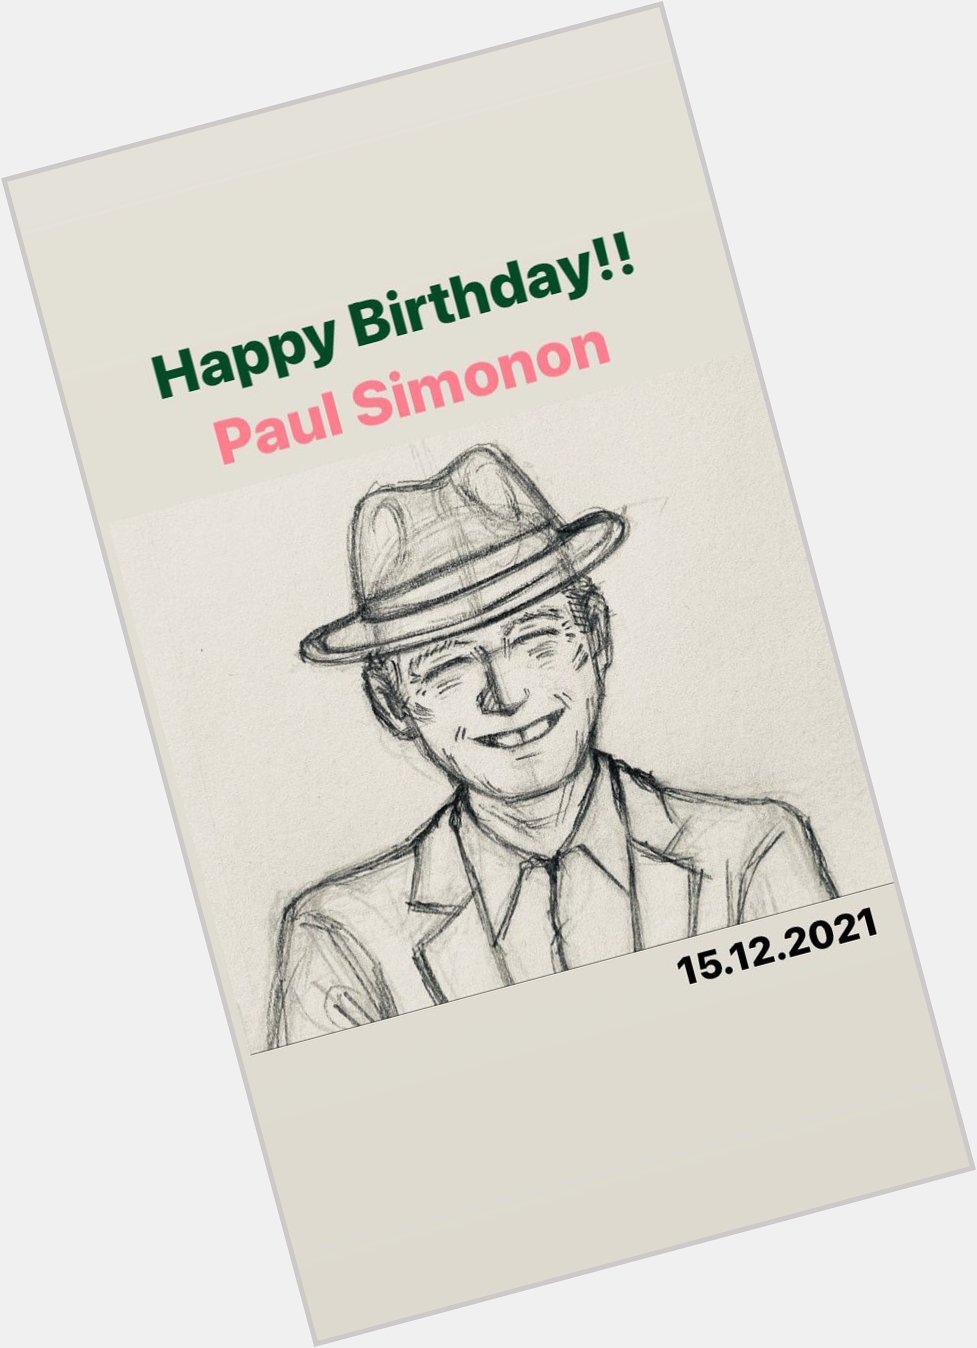 Happy Birthday!! Paul Simonon 
66           !     